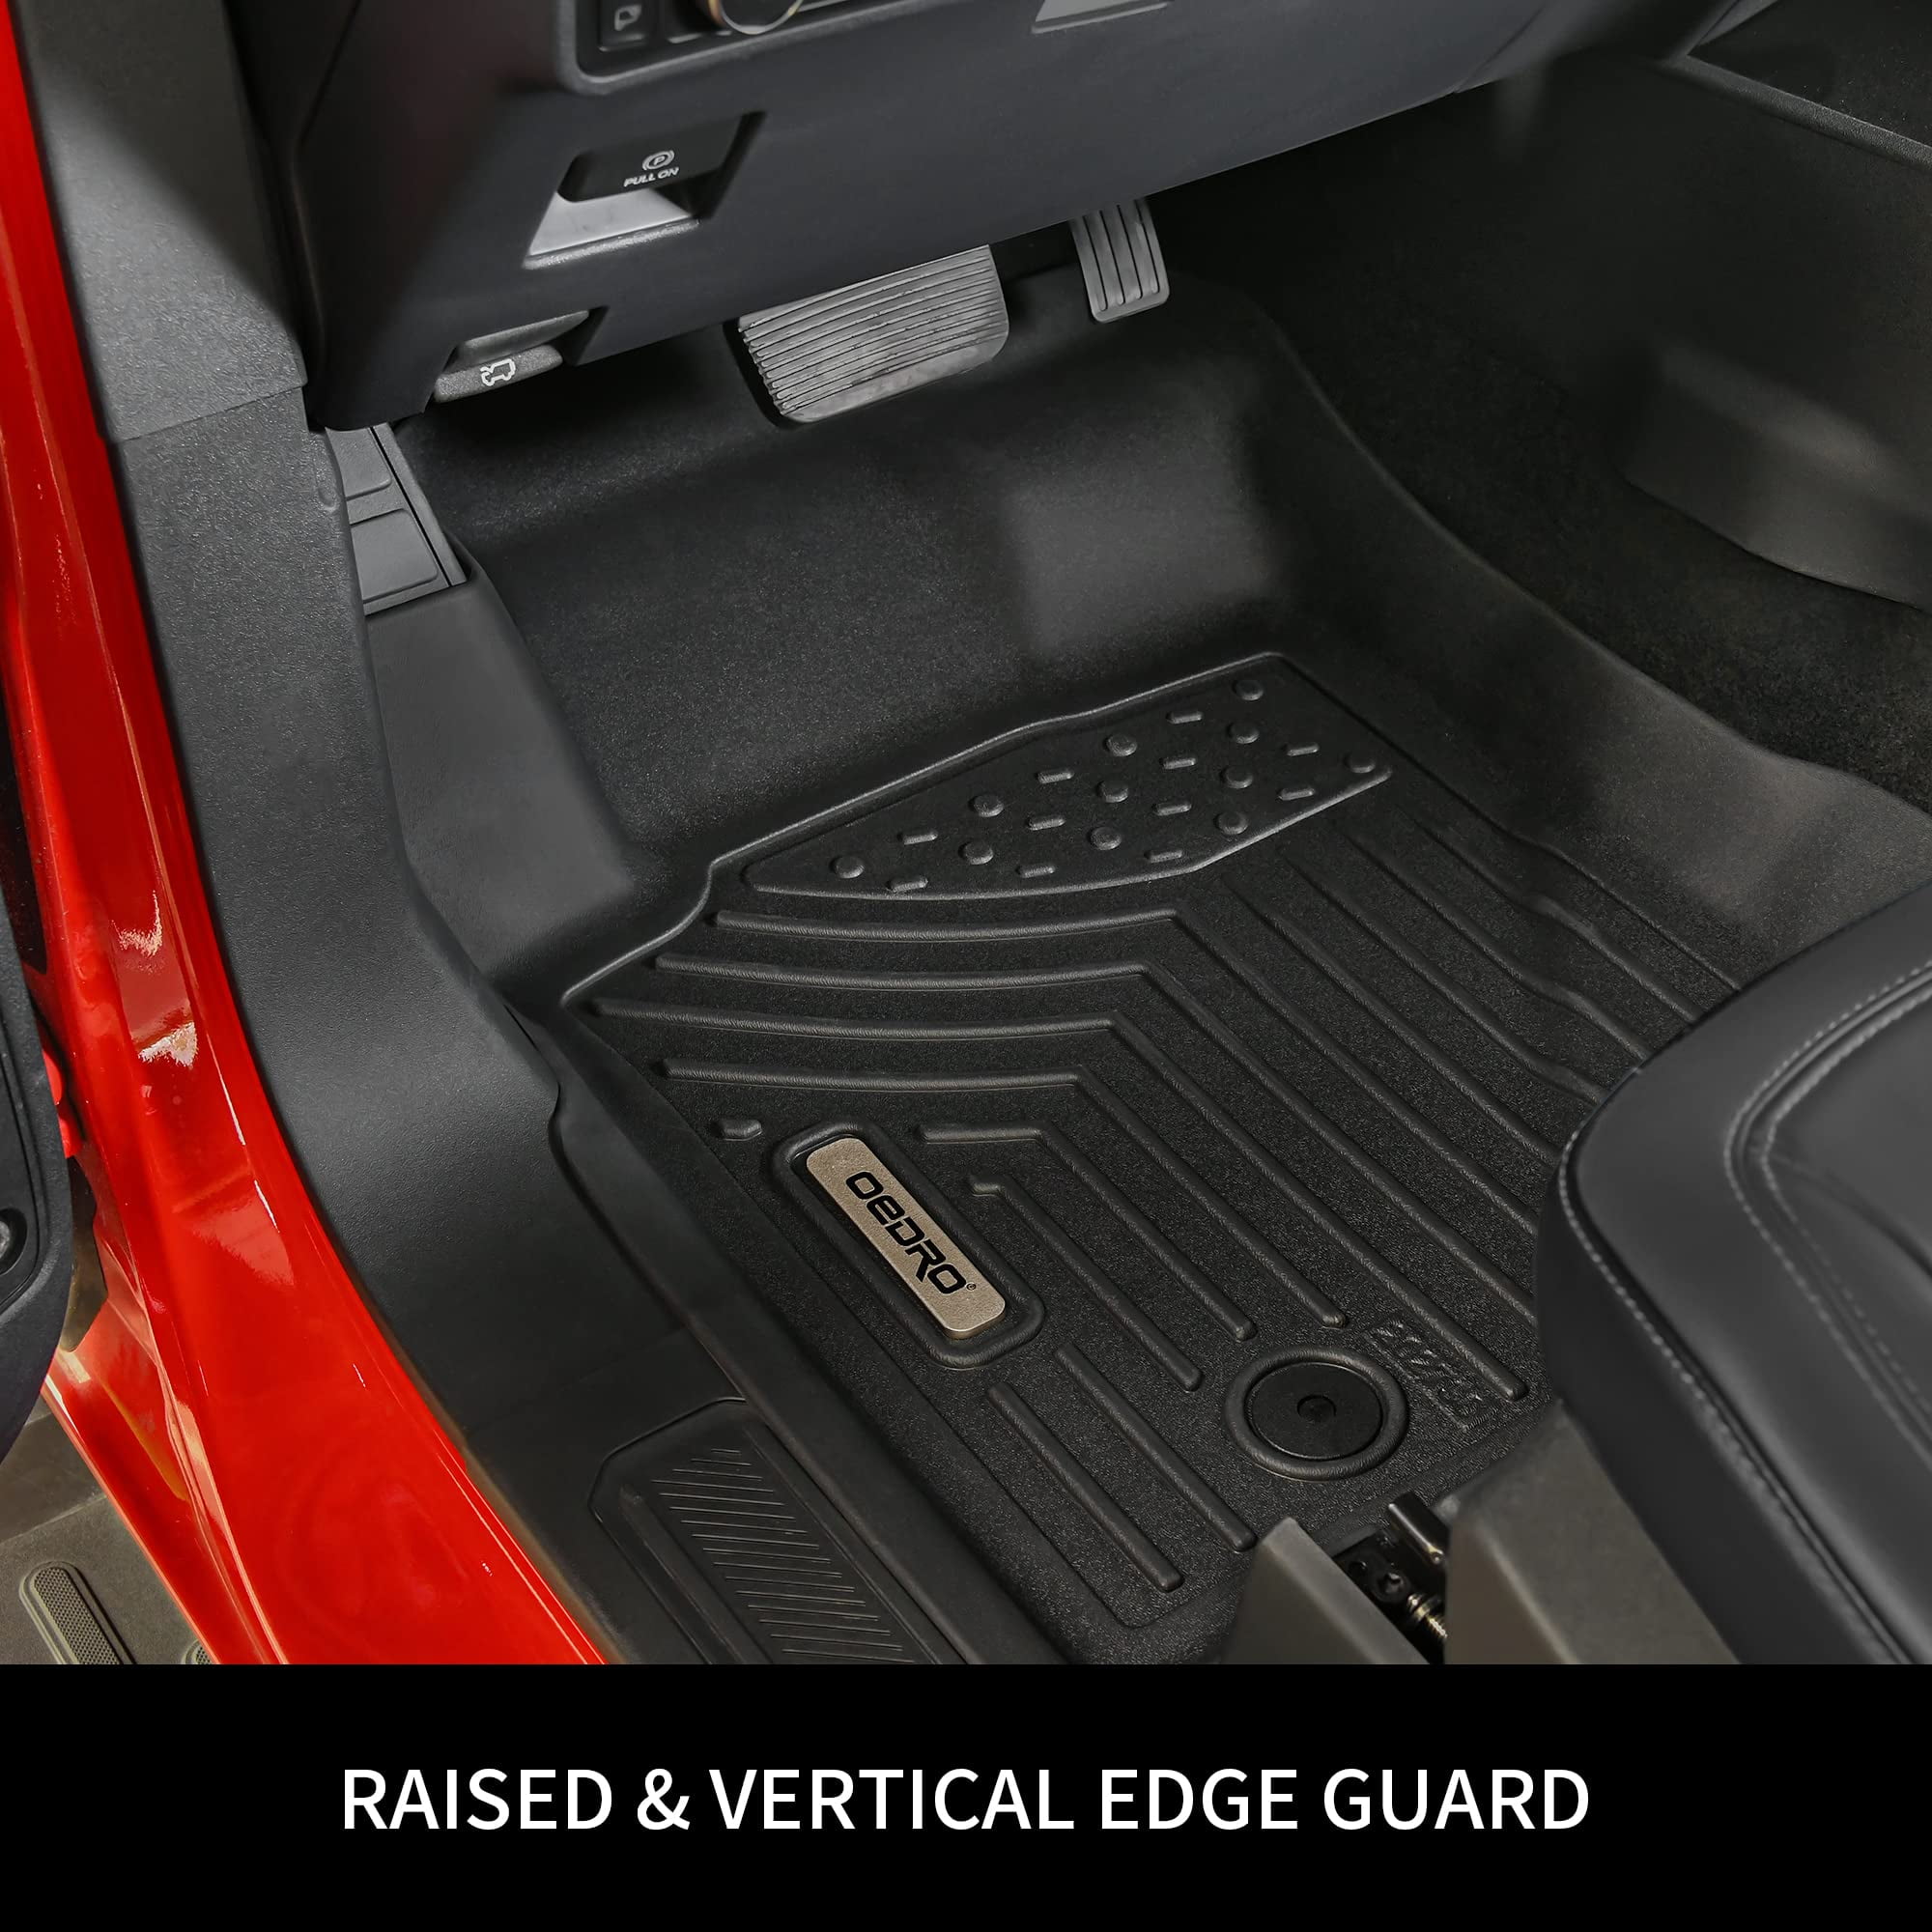 Car Floor Mat For Honda HR-V HRV HR V Vezel Vezeru RV 2022 2023